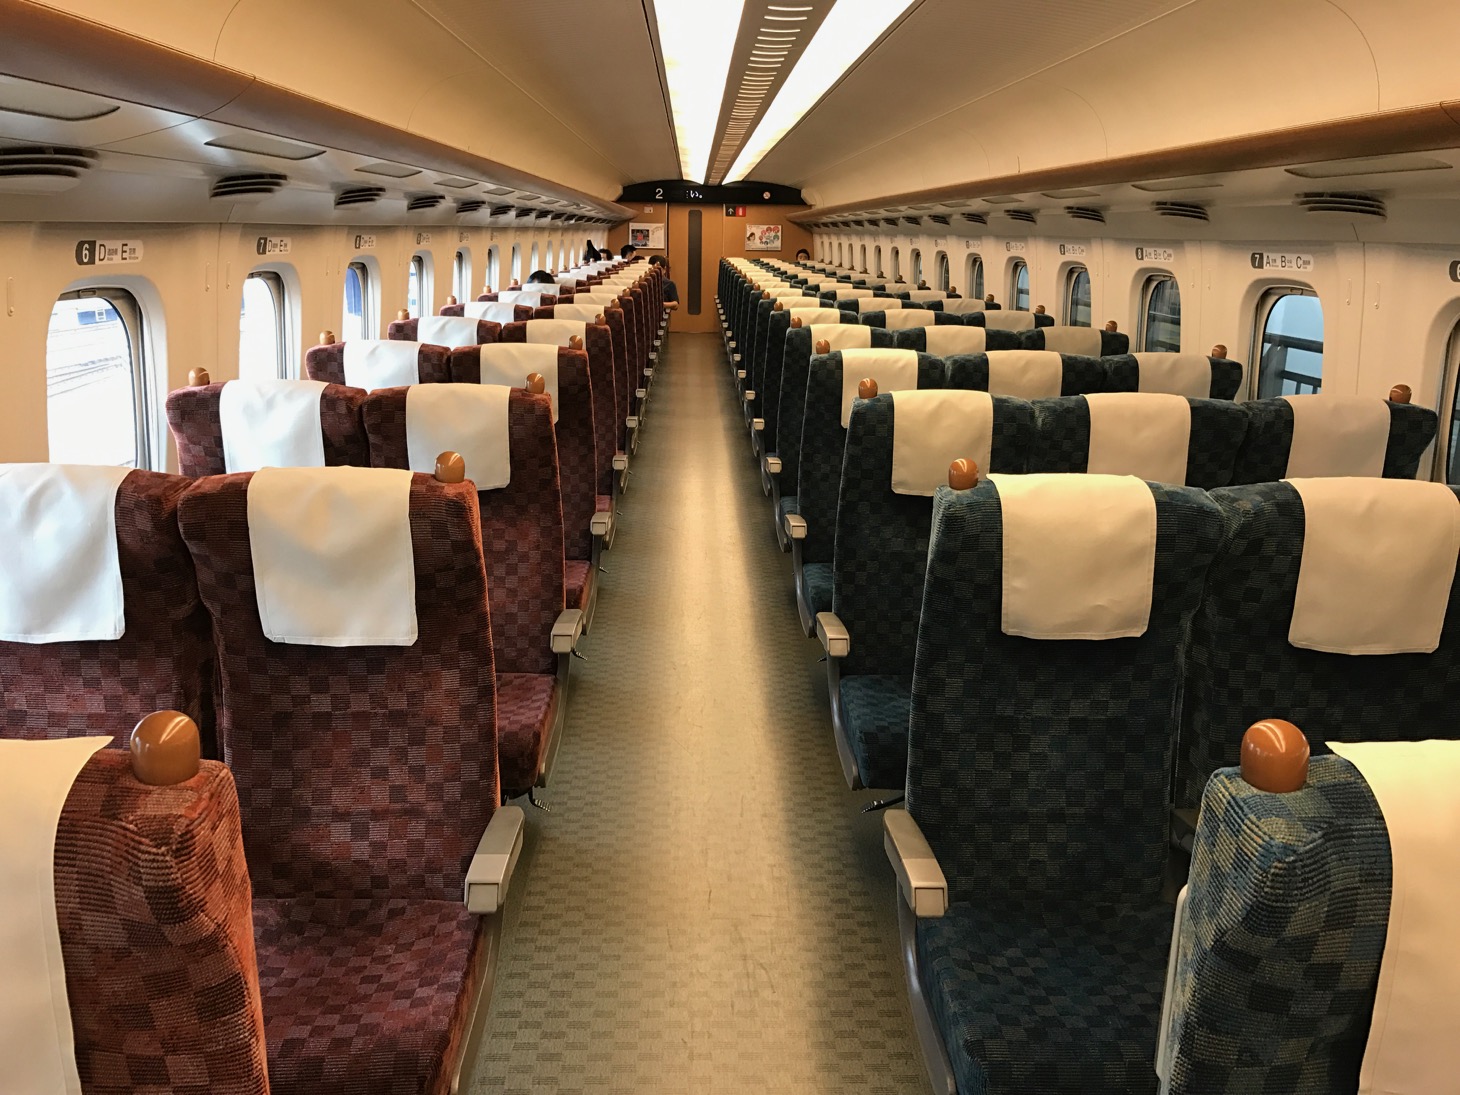 東海道新幹線のグリーン車になるべく安く乗る方法！「EXグリーン早特」や「株主優待」「ぷらっとこだま」など各種割引サービスを徹底解説